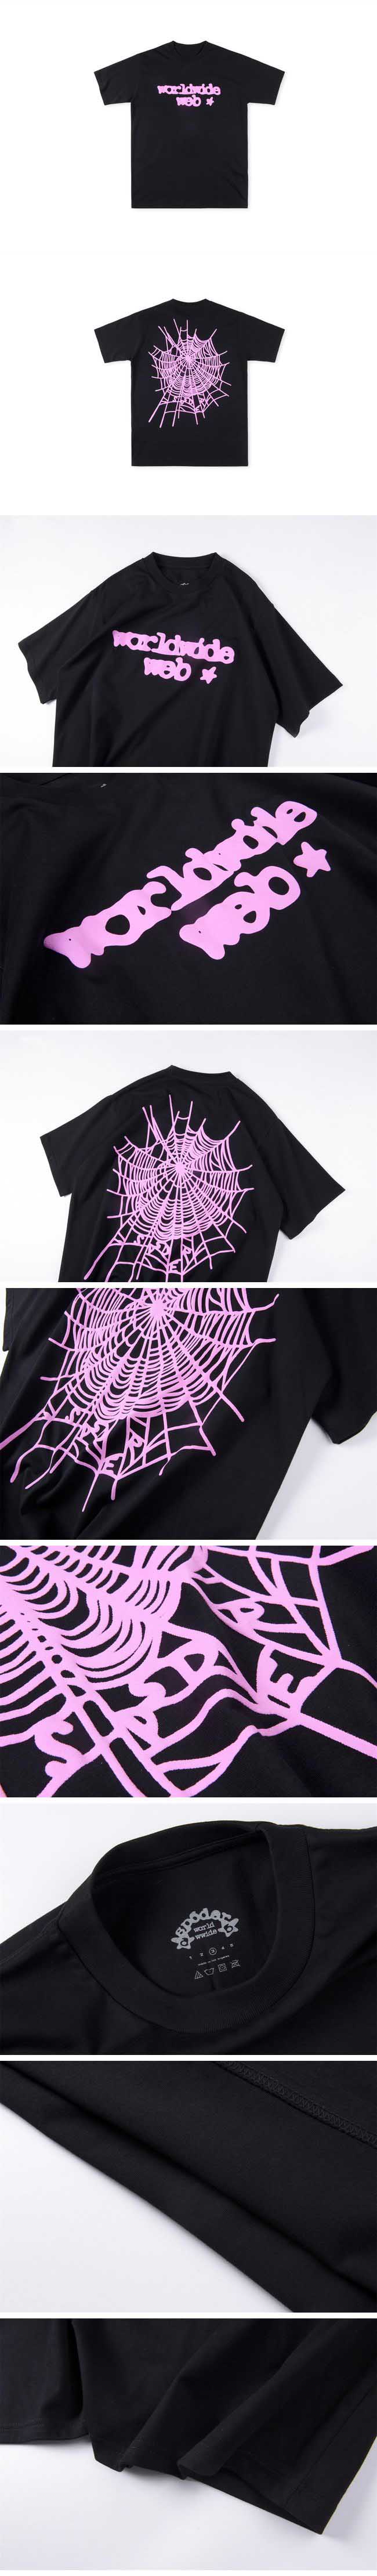 Sp5der Pink Spider Logo Tee スパイダー ピンク スパイダー ロゴ Tシャツ